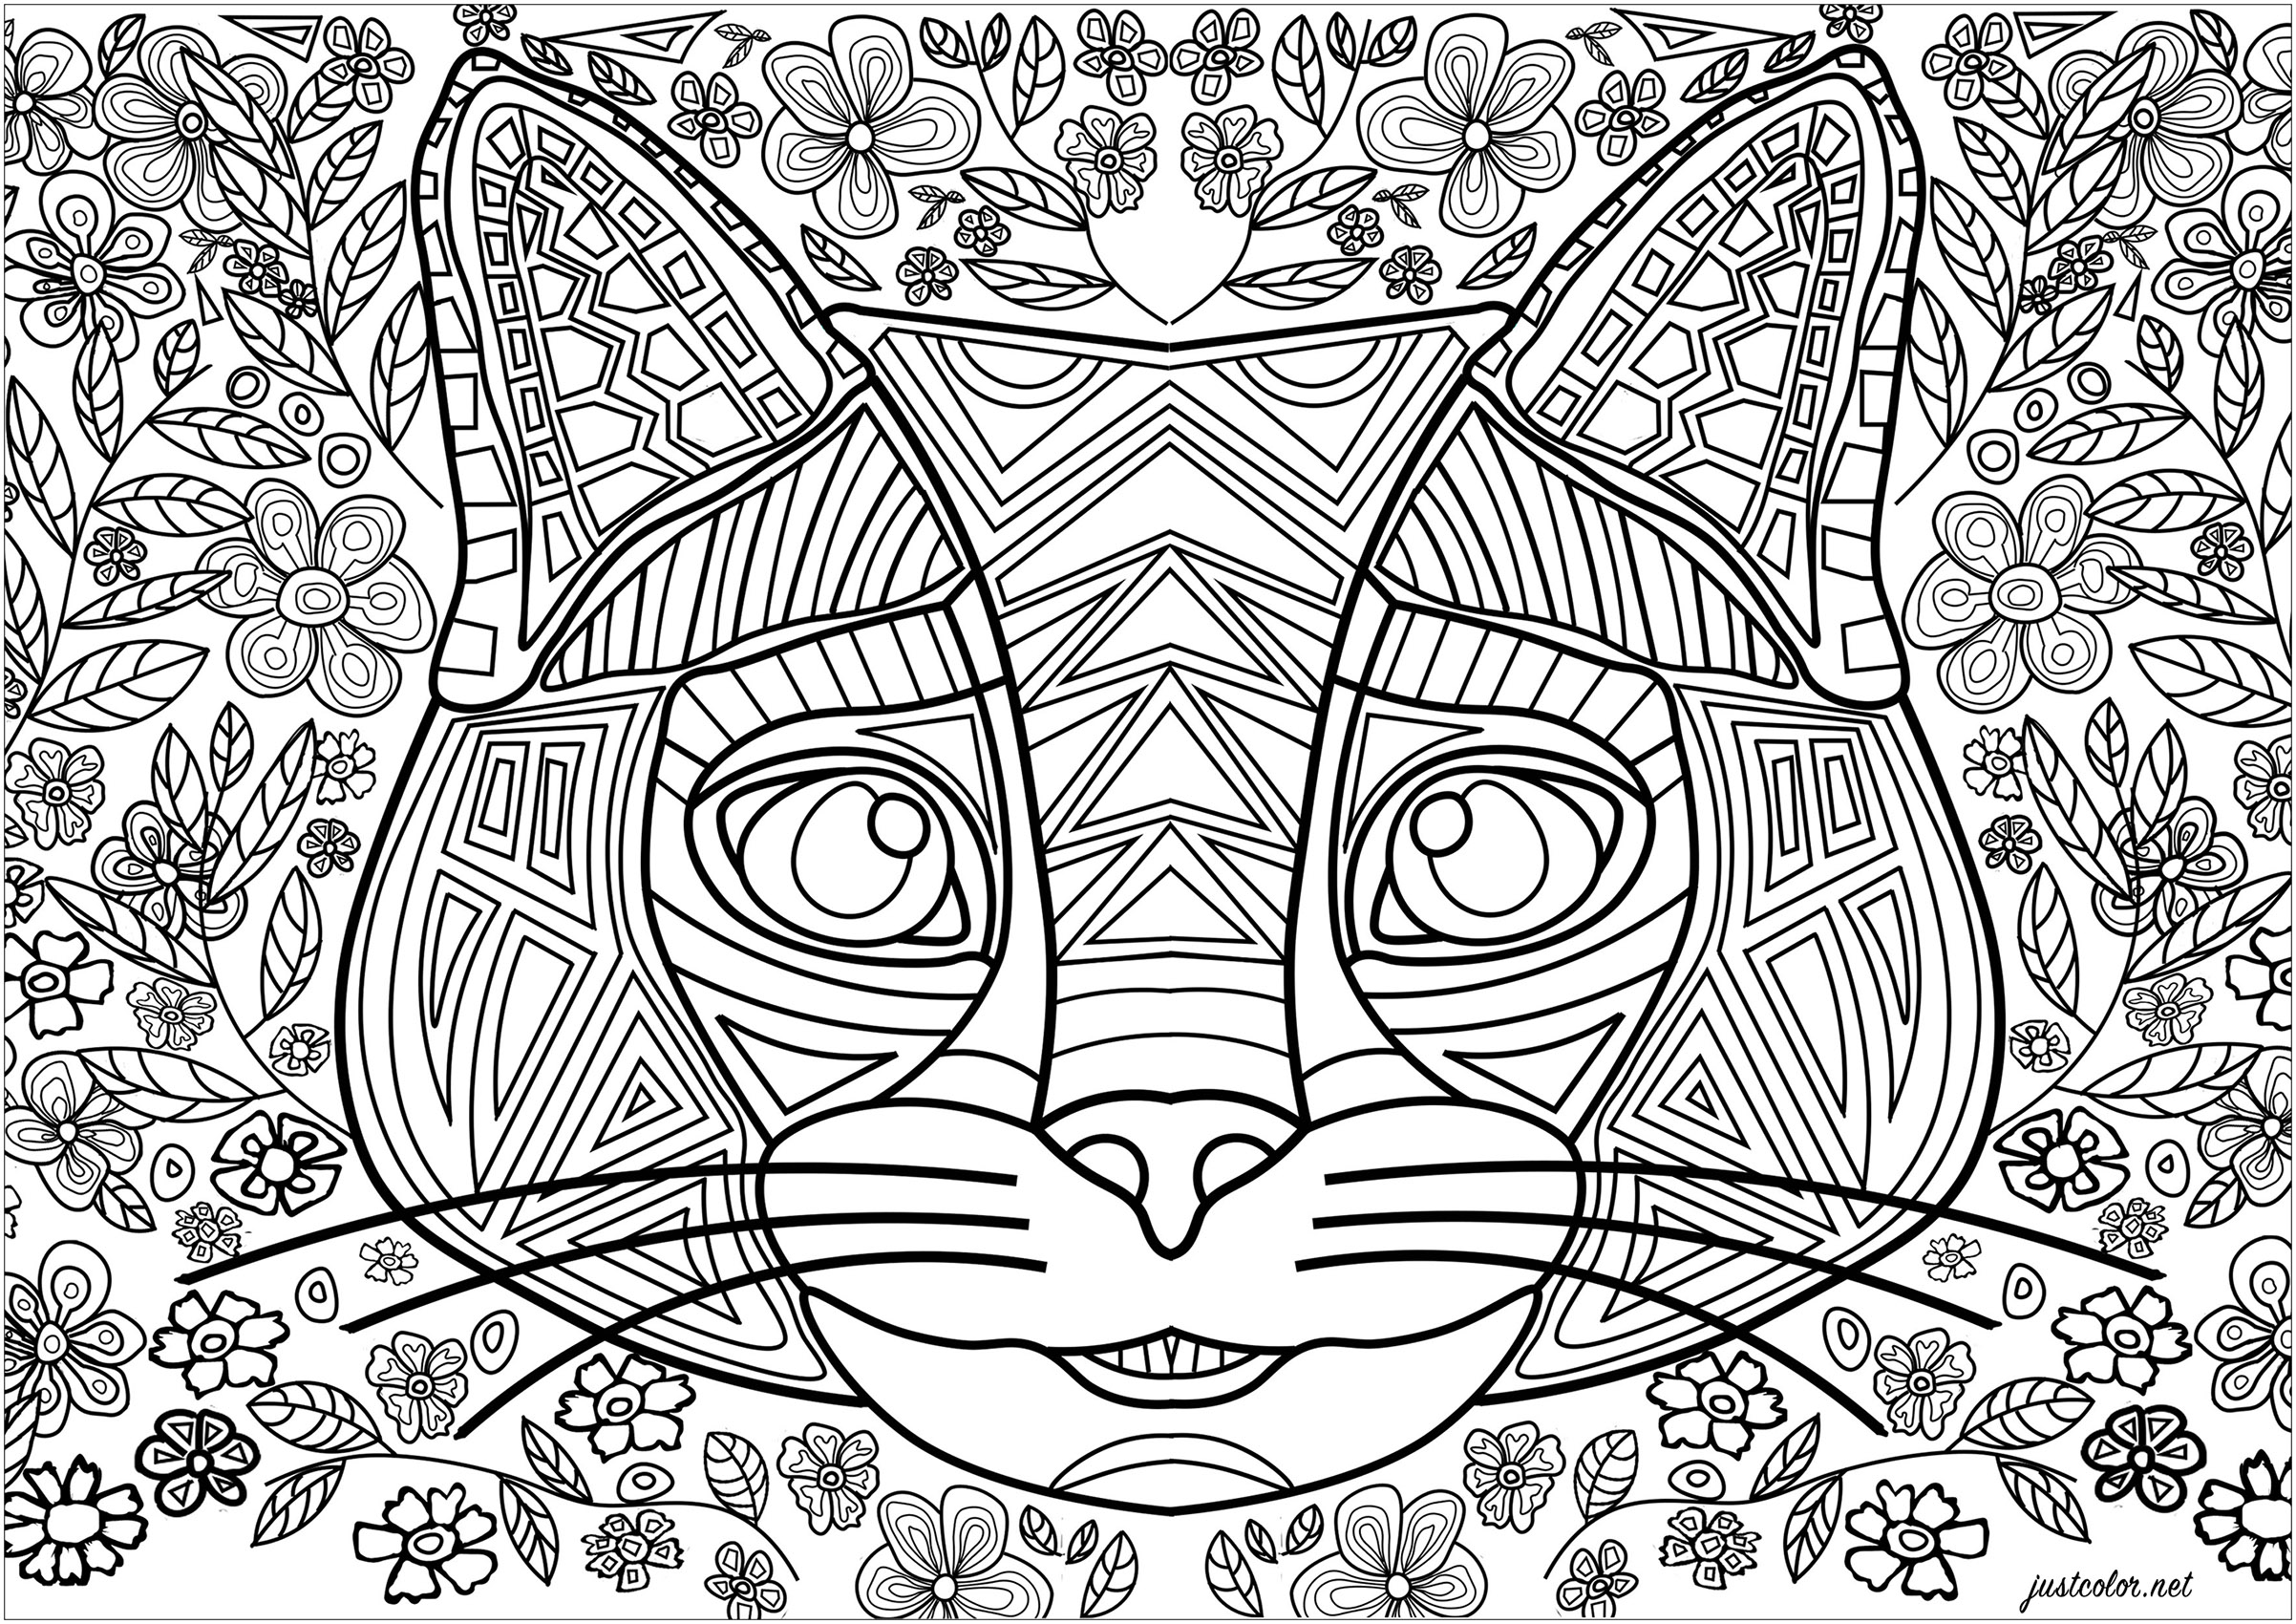 Cabeça de gato formada por linhas regulares e formas geométricas.